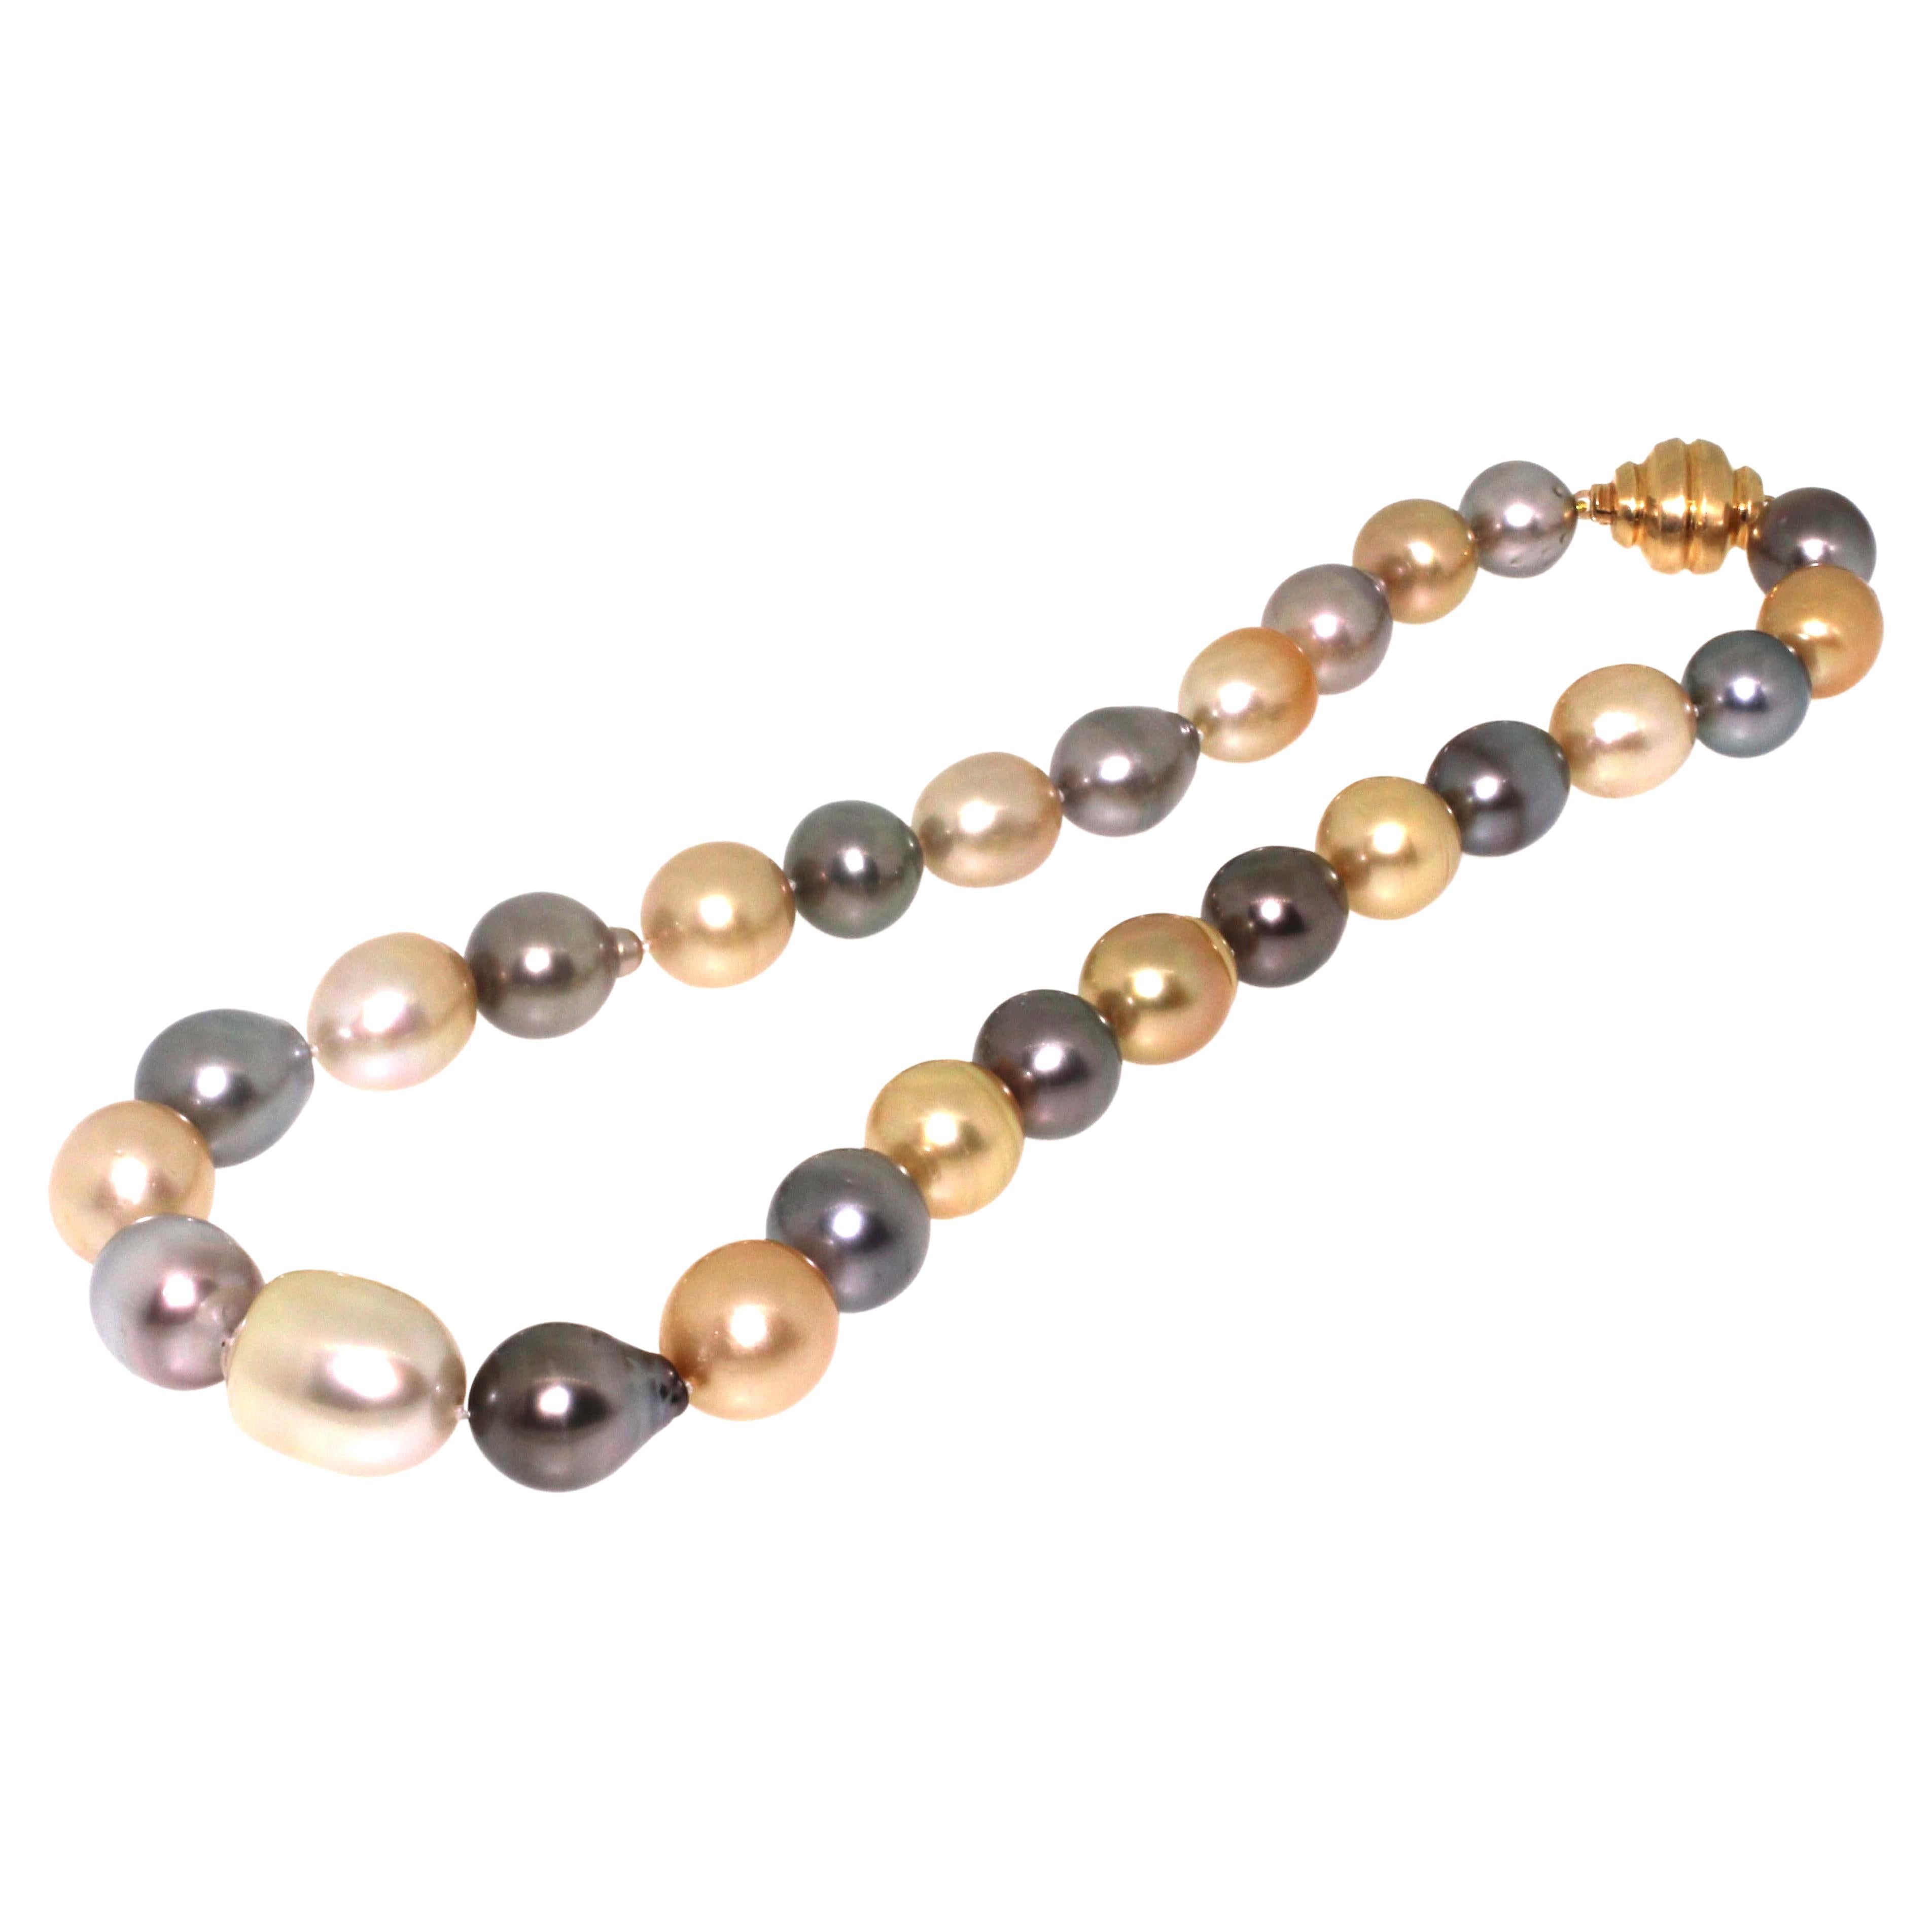 Hakimoto By Jewel Of Ocean Collier de perles baroques des mers du Sud multicolores
Fermoir en or jaune 18K
12x16mm Couleur naturelle perle de Tahiti et perle dorée